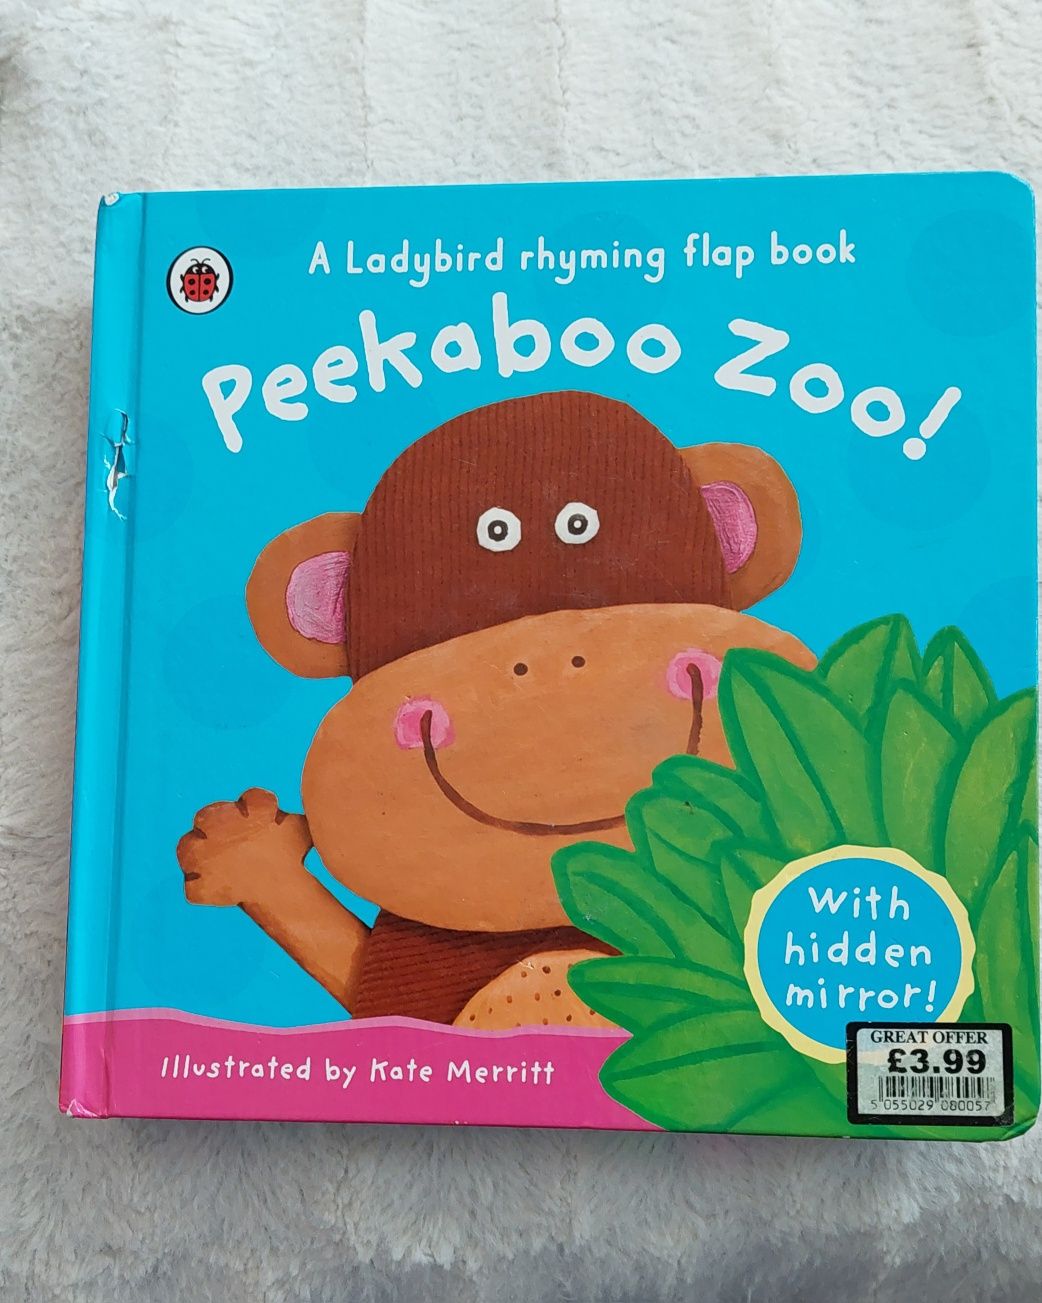 Ksiazka "Peekaboo Zoo " po angielsku